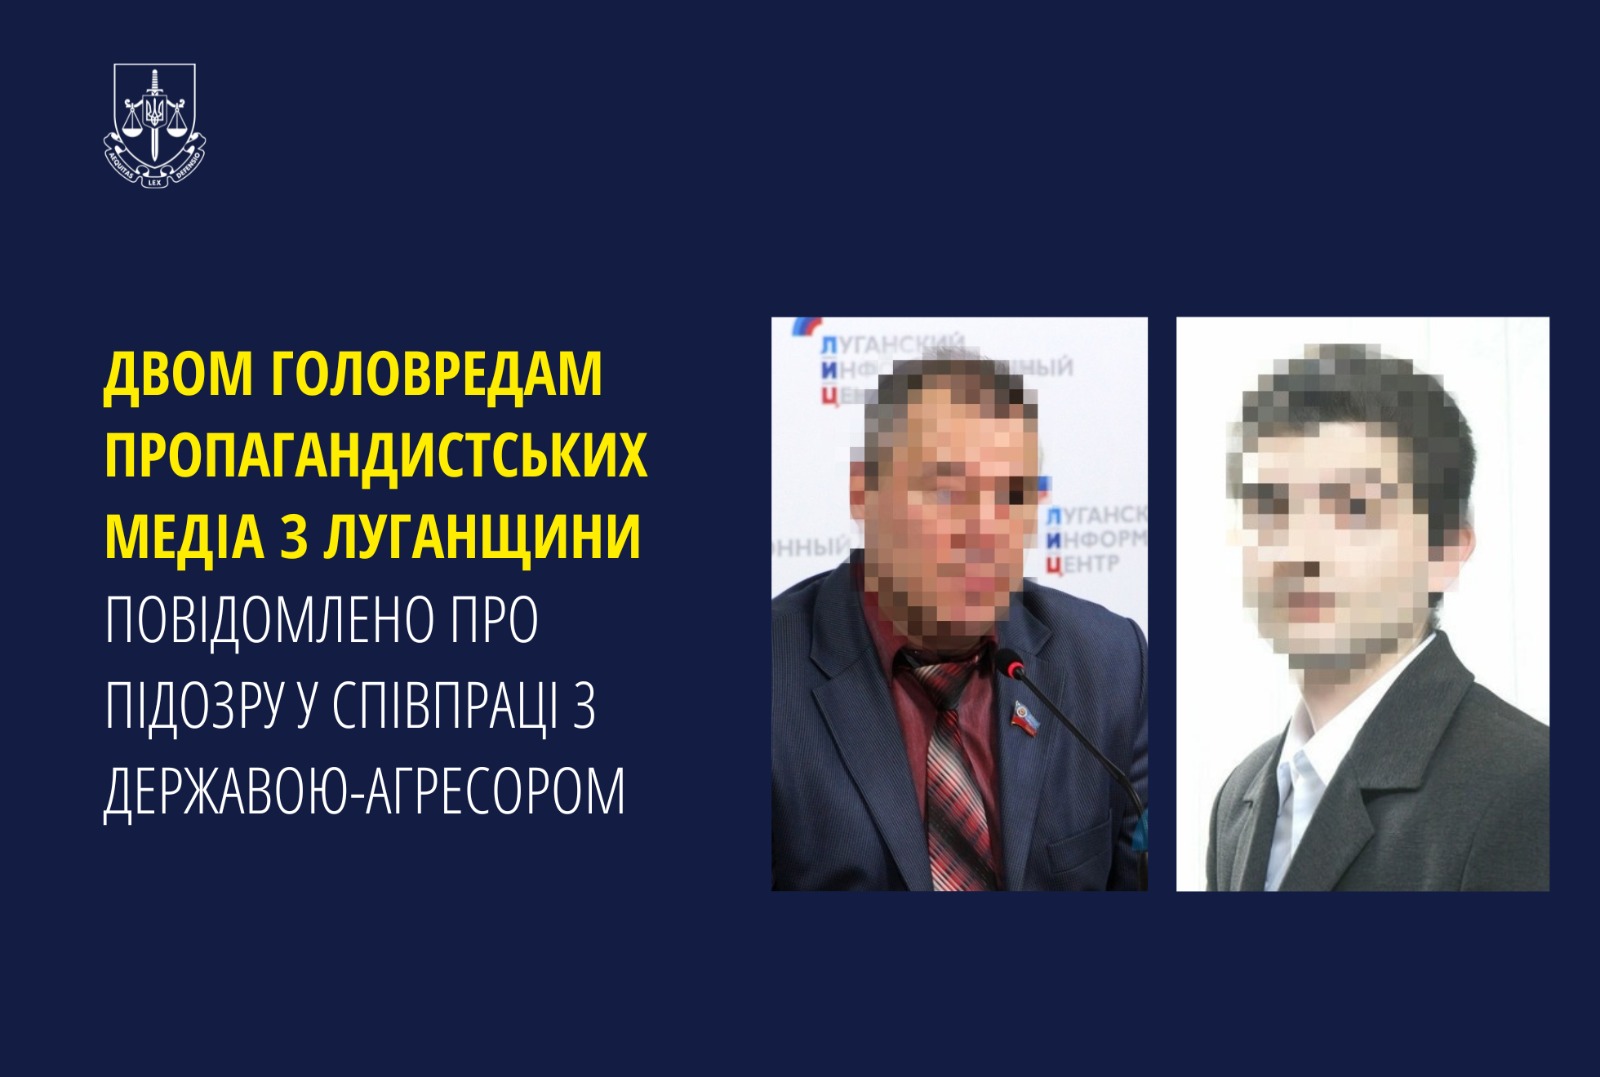 Двом головредам пропагандистських медіа з Луганщини повідомлено про підозру у співпраці з державою-агресором